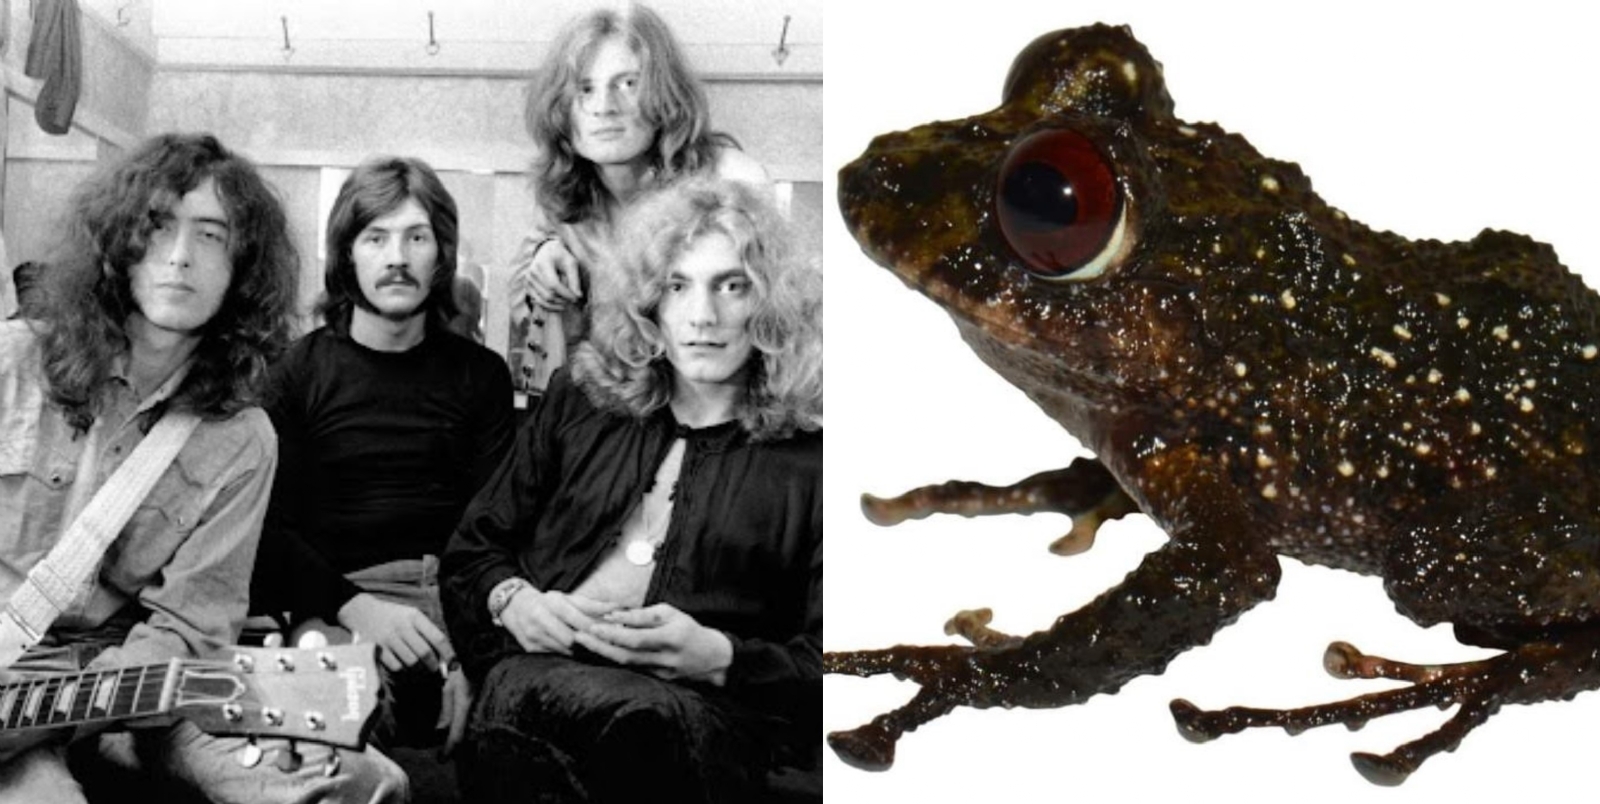 INABIO quiso honrar a la banda Led Zeppelin, por ello, le agregaron el nombre a la rana